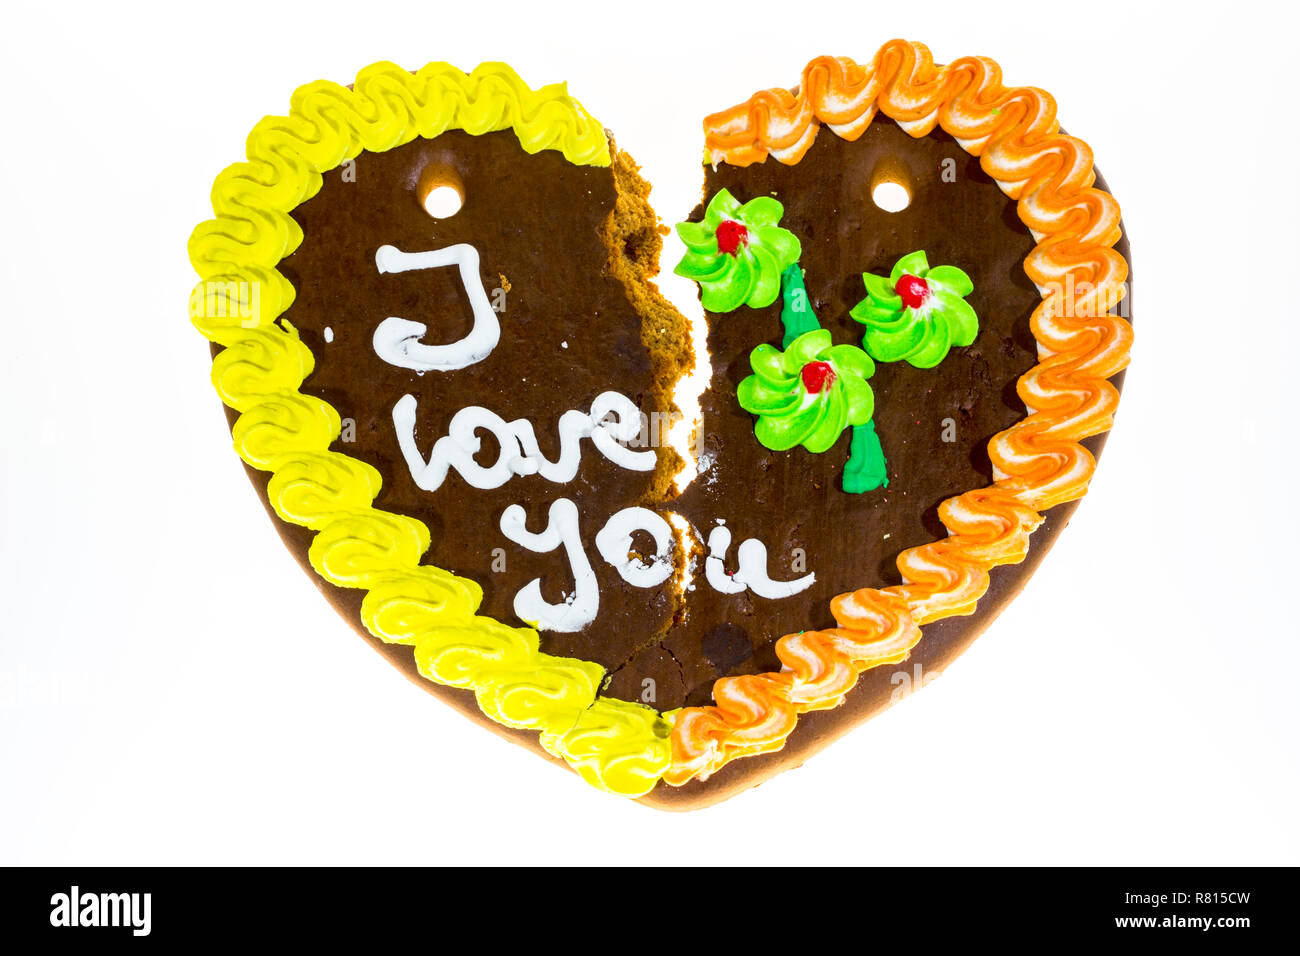 Broken gingerbread heart avec le message "I love you", image symbolique de séparation ou de divorce Banque D'Images